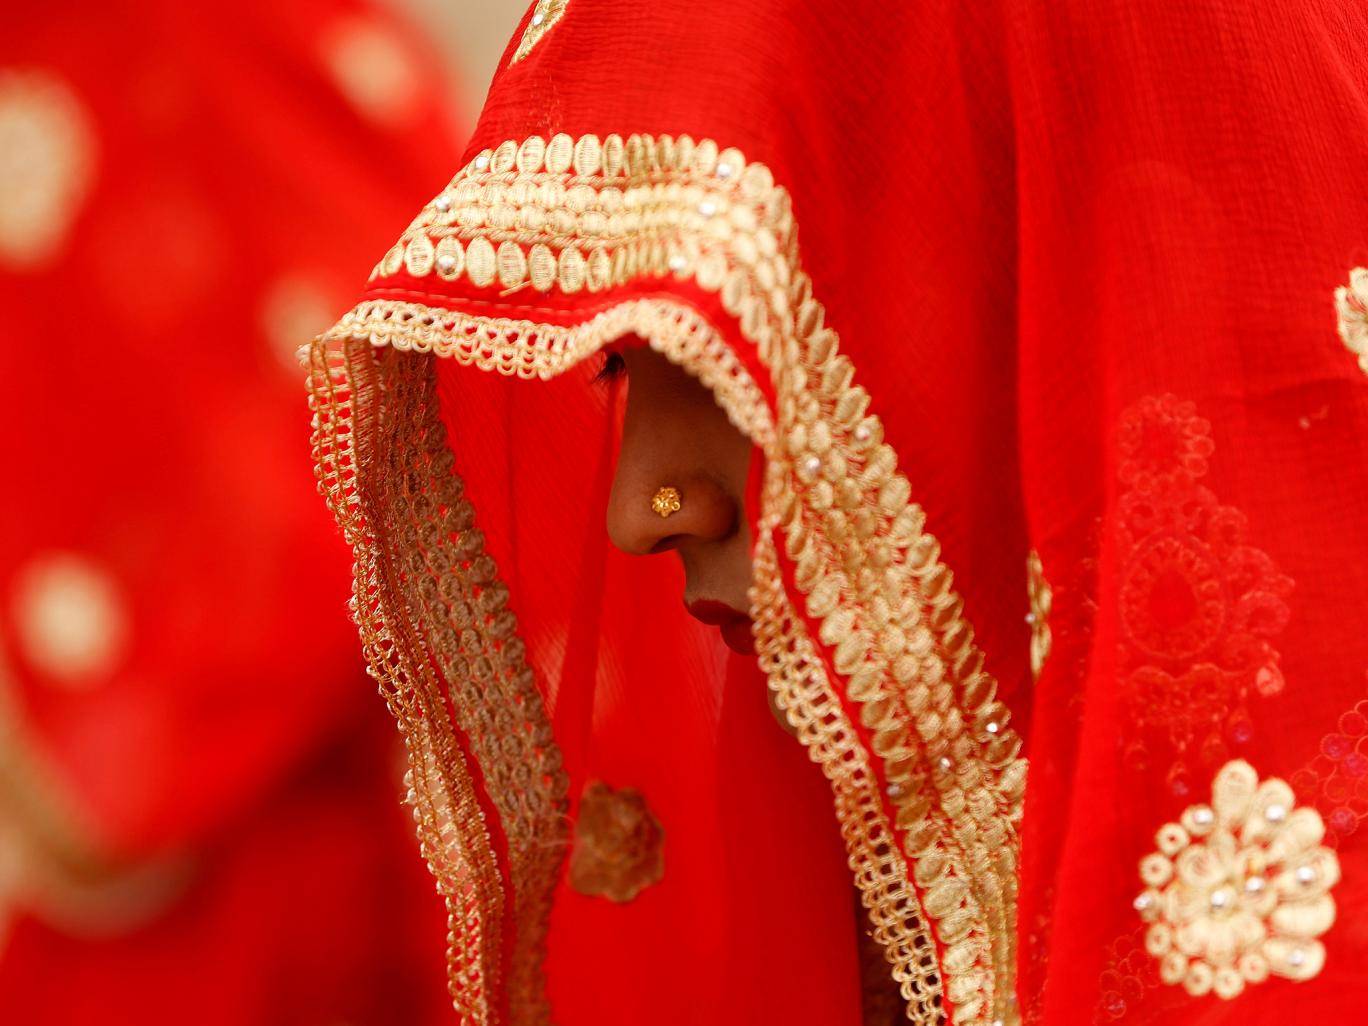 Ấn Độ: Chú rể kiểm tra trinh tiết cô dâu, hội đồng làng ngồi ngoài chờ - 1